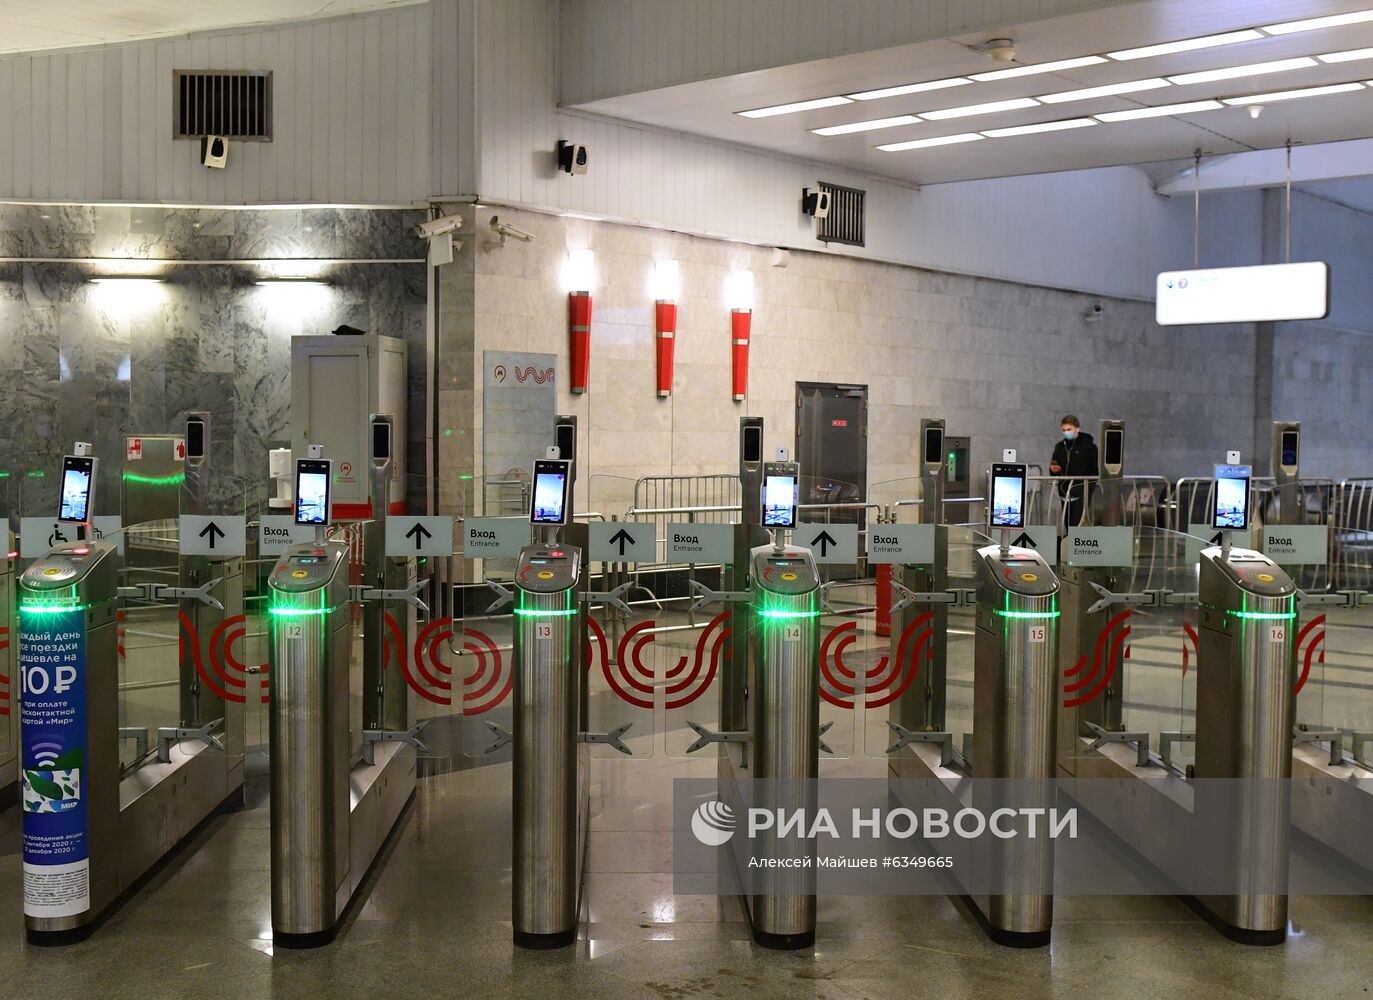 Меры профилактики коронавируса в метро